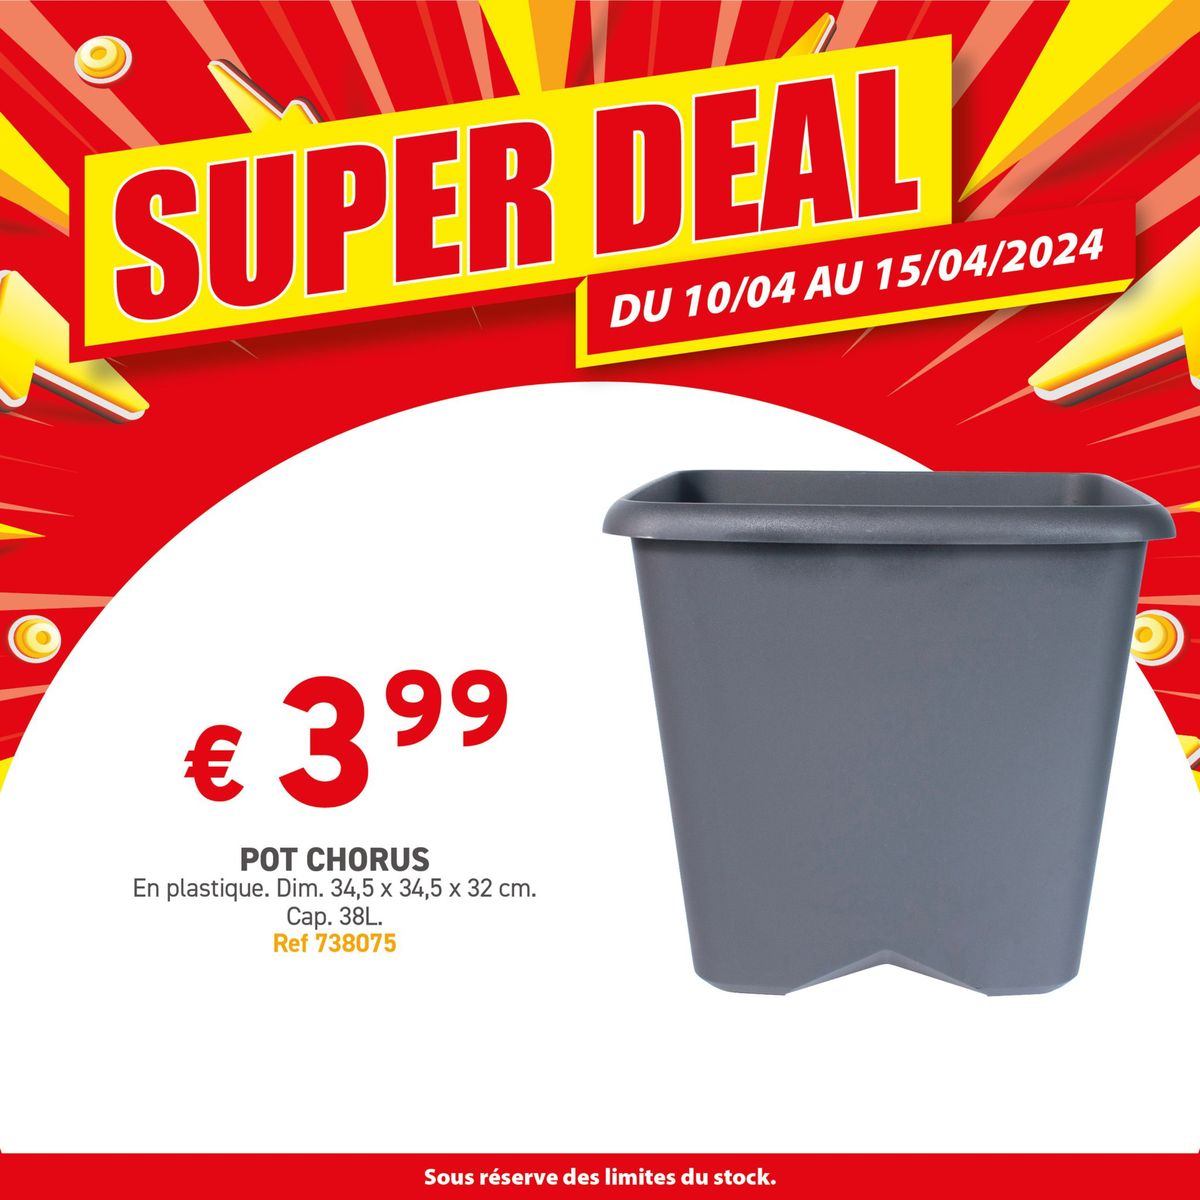 Catalogue Alerte Super Deal chez Trafic !, page 00010